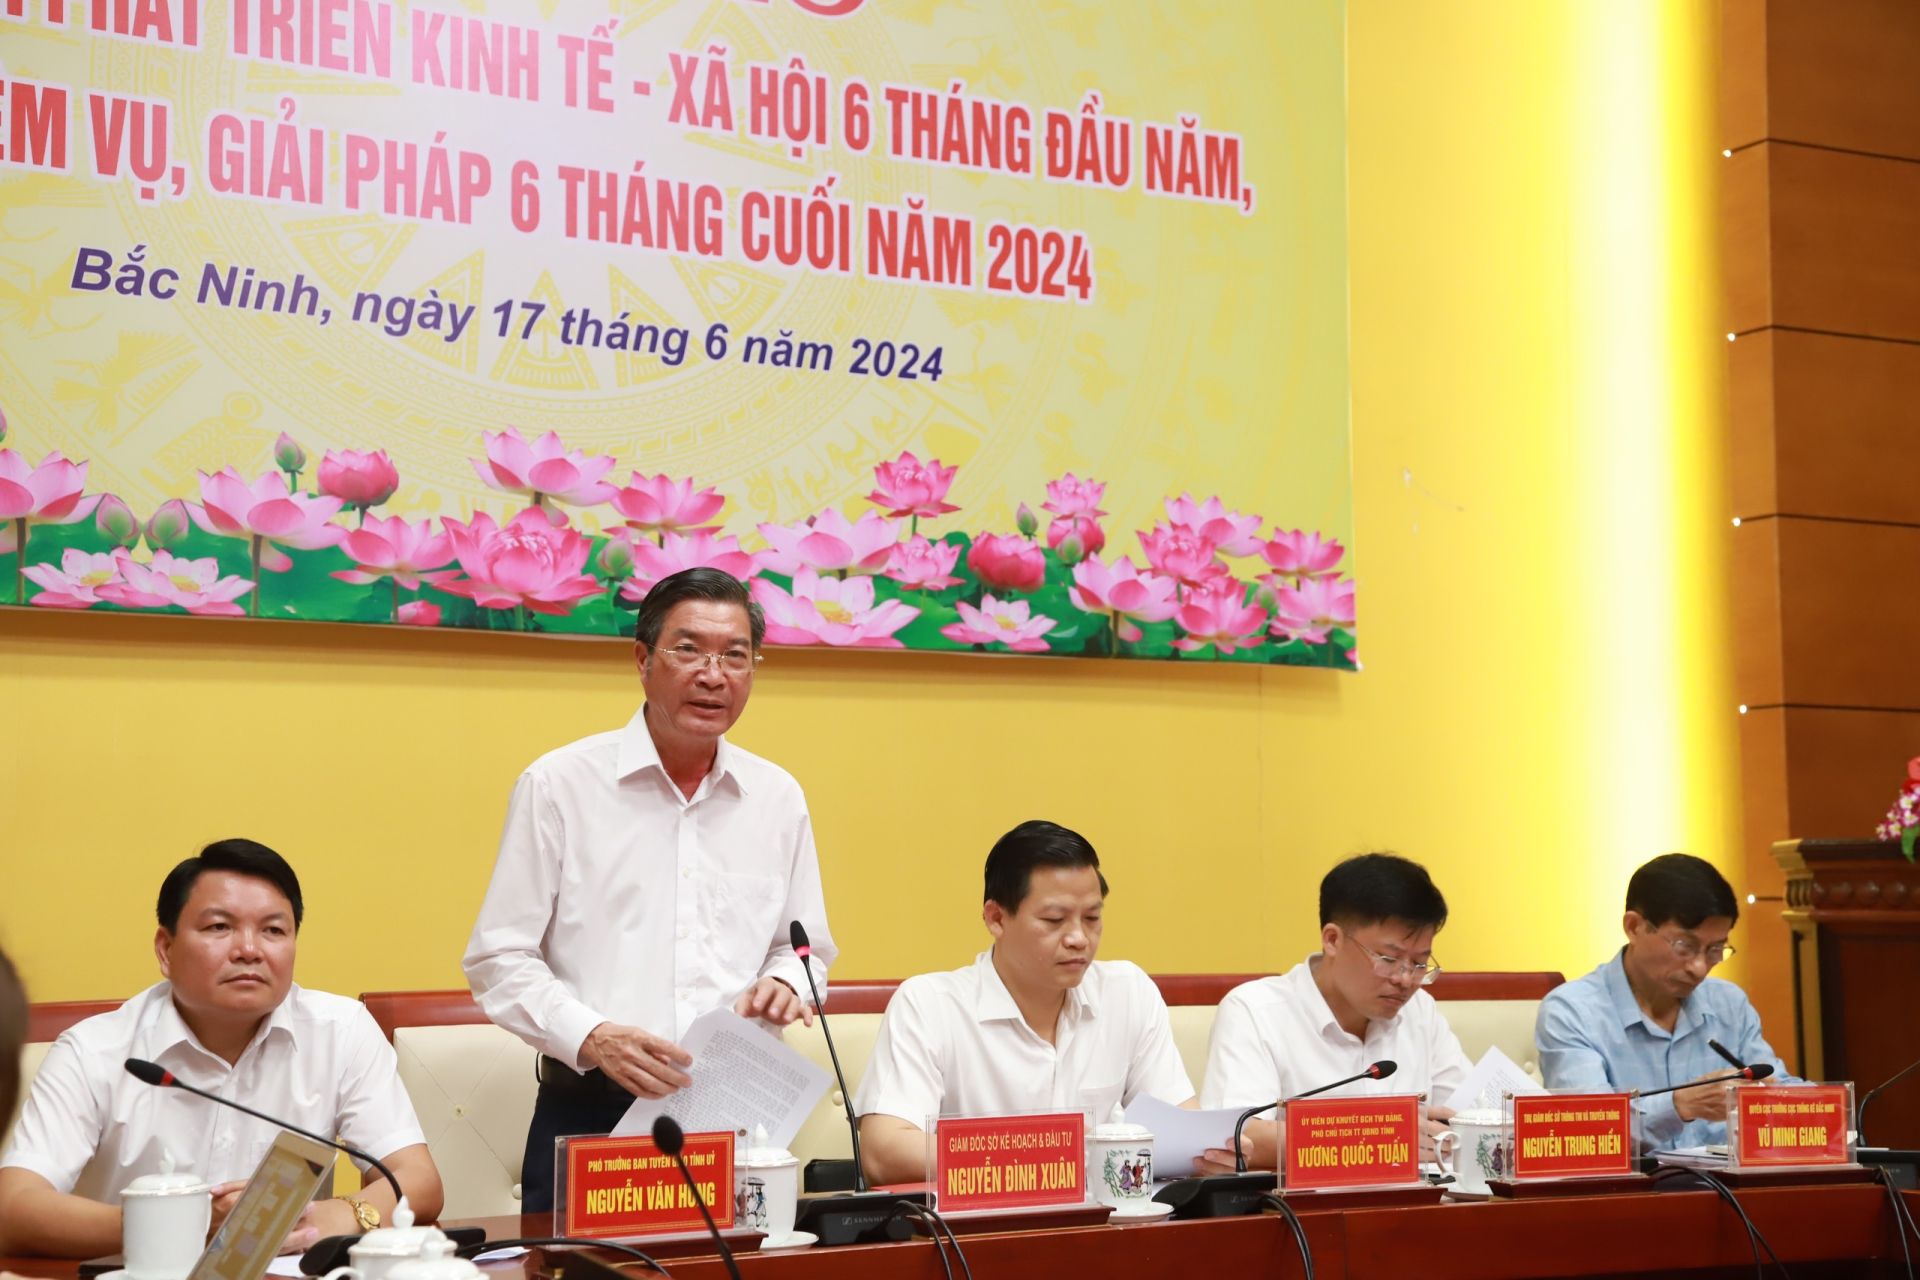 Đại diện Sở Kế hoạch và Đầu tư tỉnh Bắc Ninh thông tin tại họp báo